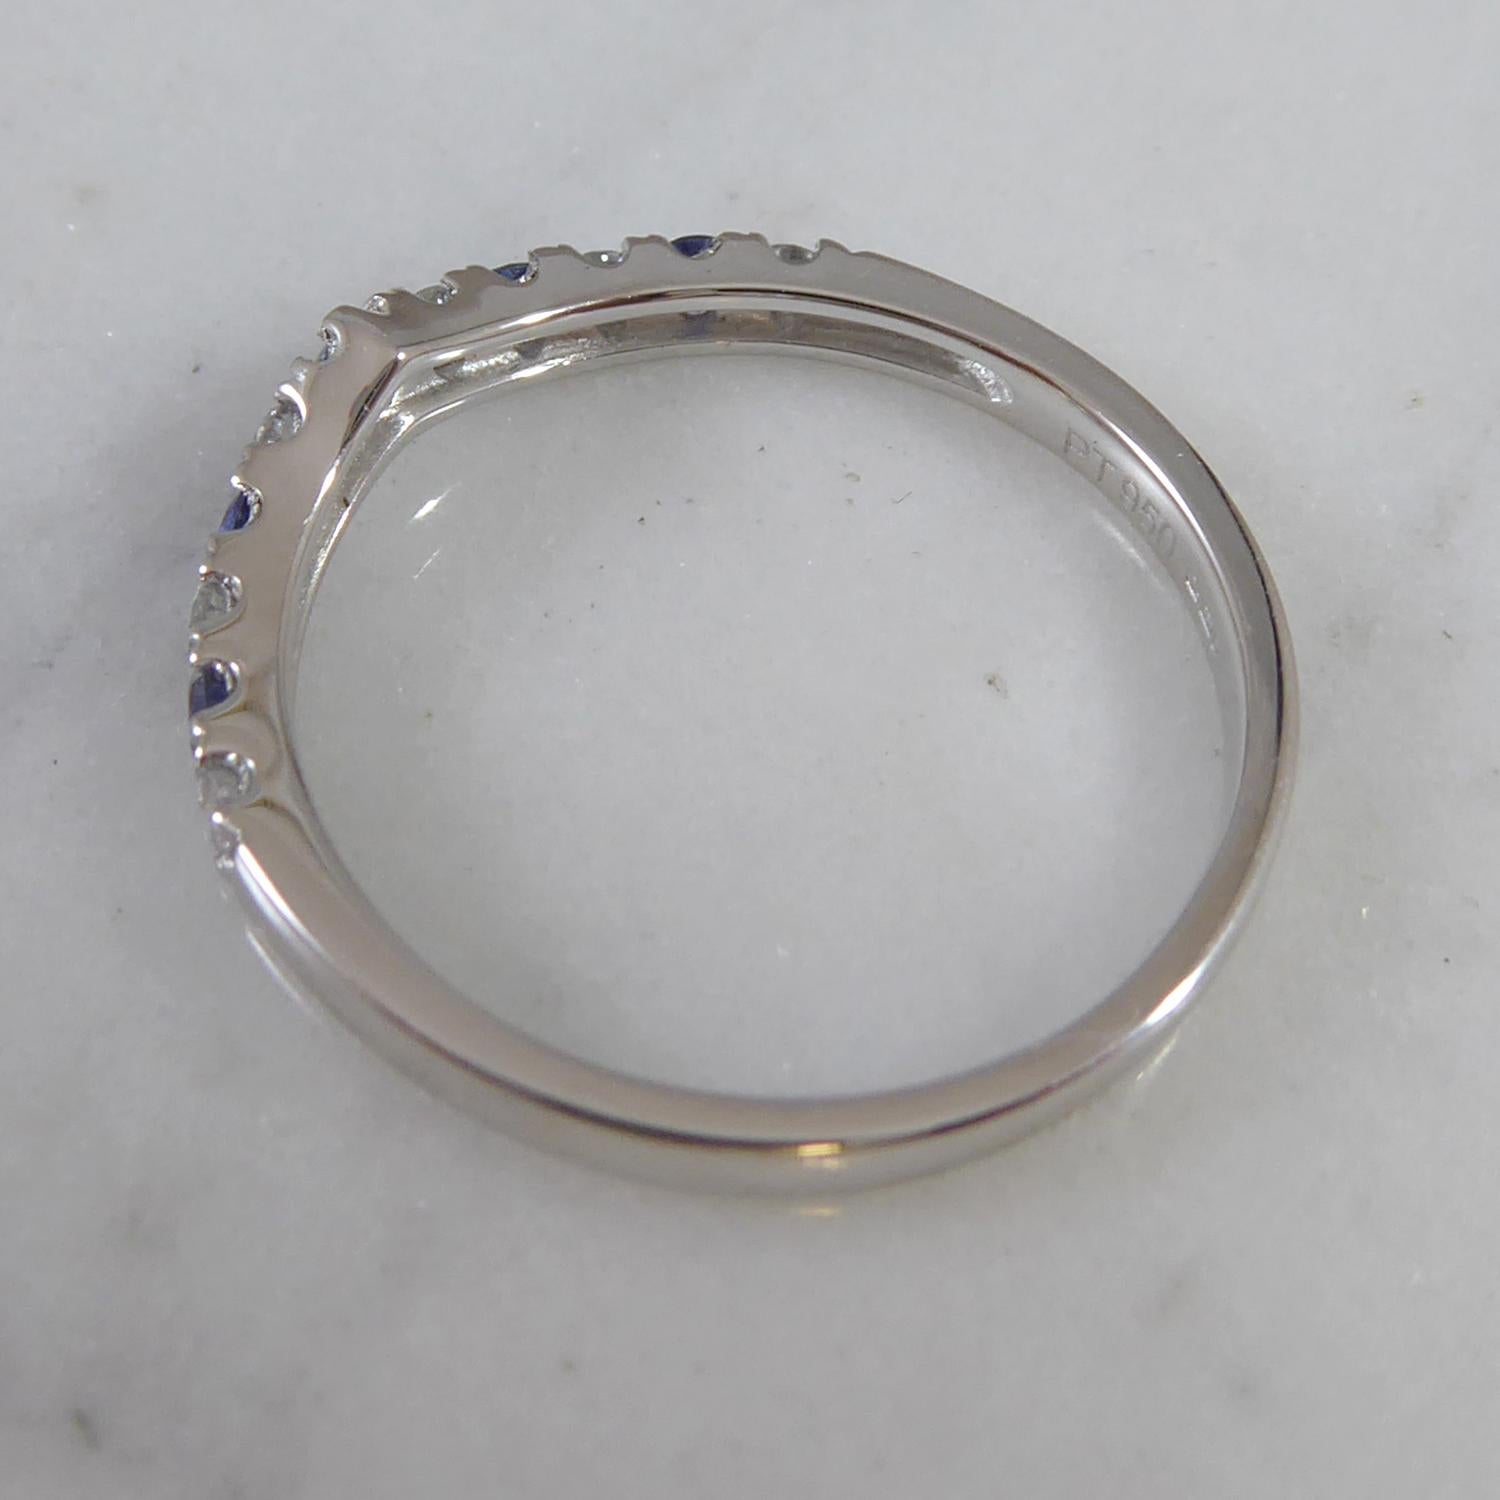 Round Cut Sapphire and Diamond Wishbone Band Ring, New and Unworn, Platinum